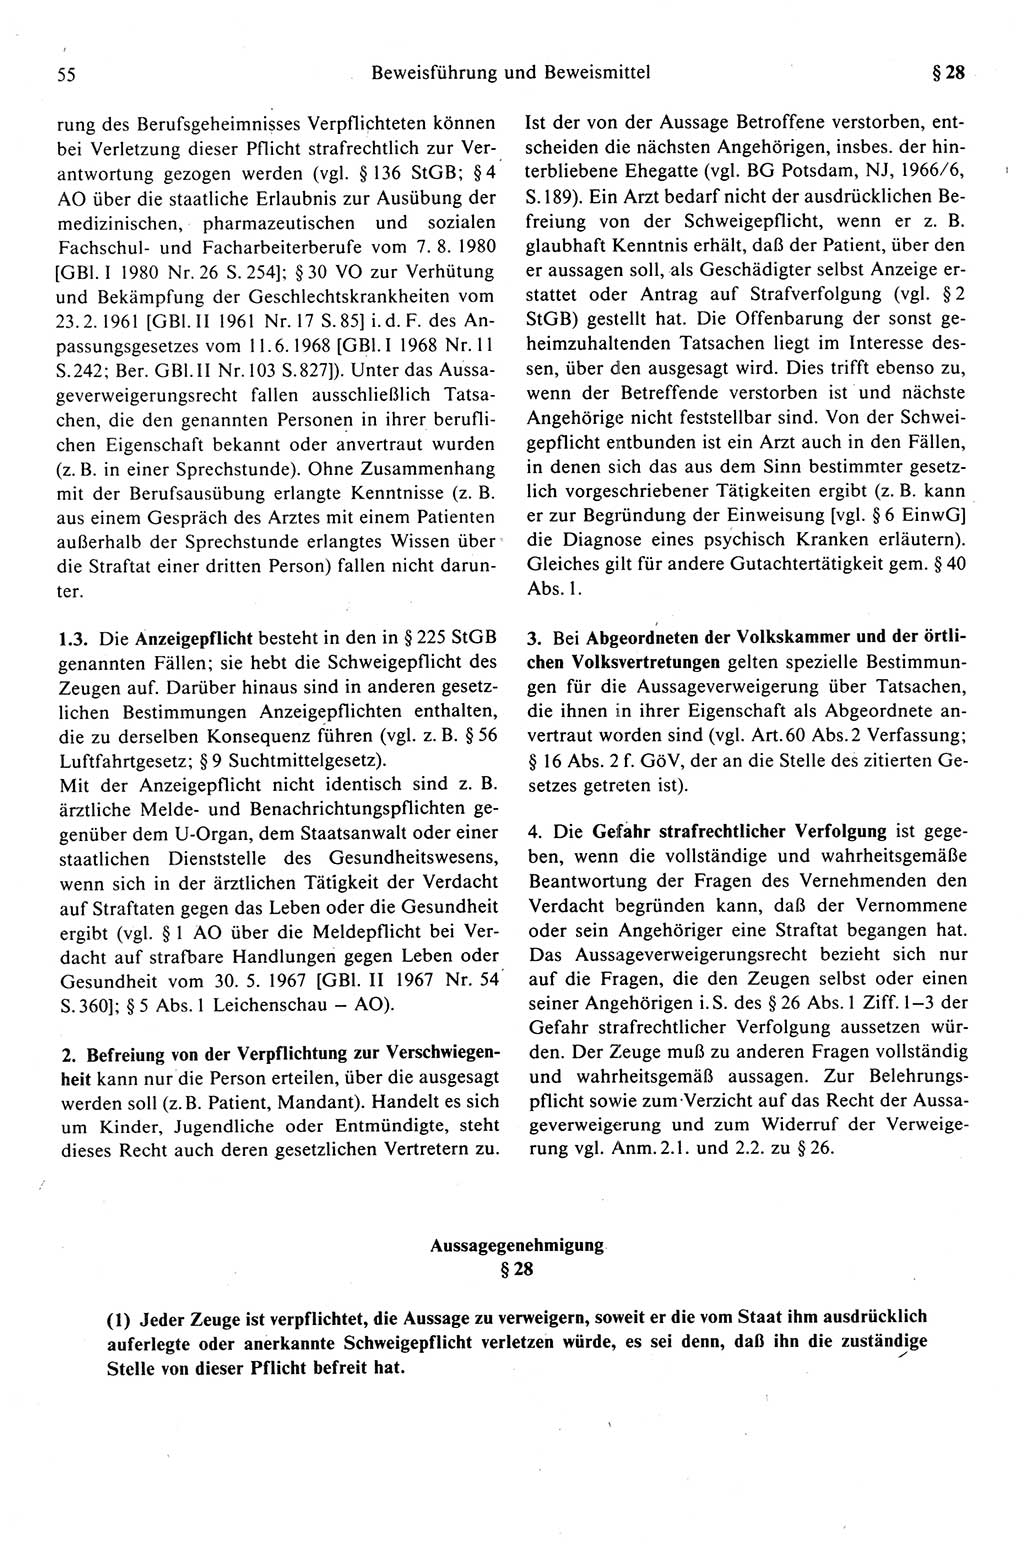 Strafprozeßrecht der DDR (Deutsche Demokratische Republik), Kommentar zur Strafprozeßordnung (StPO) 1989, Seite 55 (Strafprozeßr. DDR Komm. StPO 1989, S. 55)